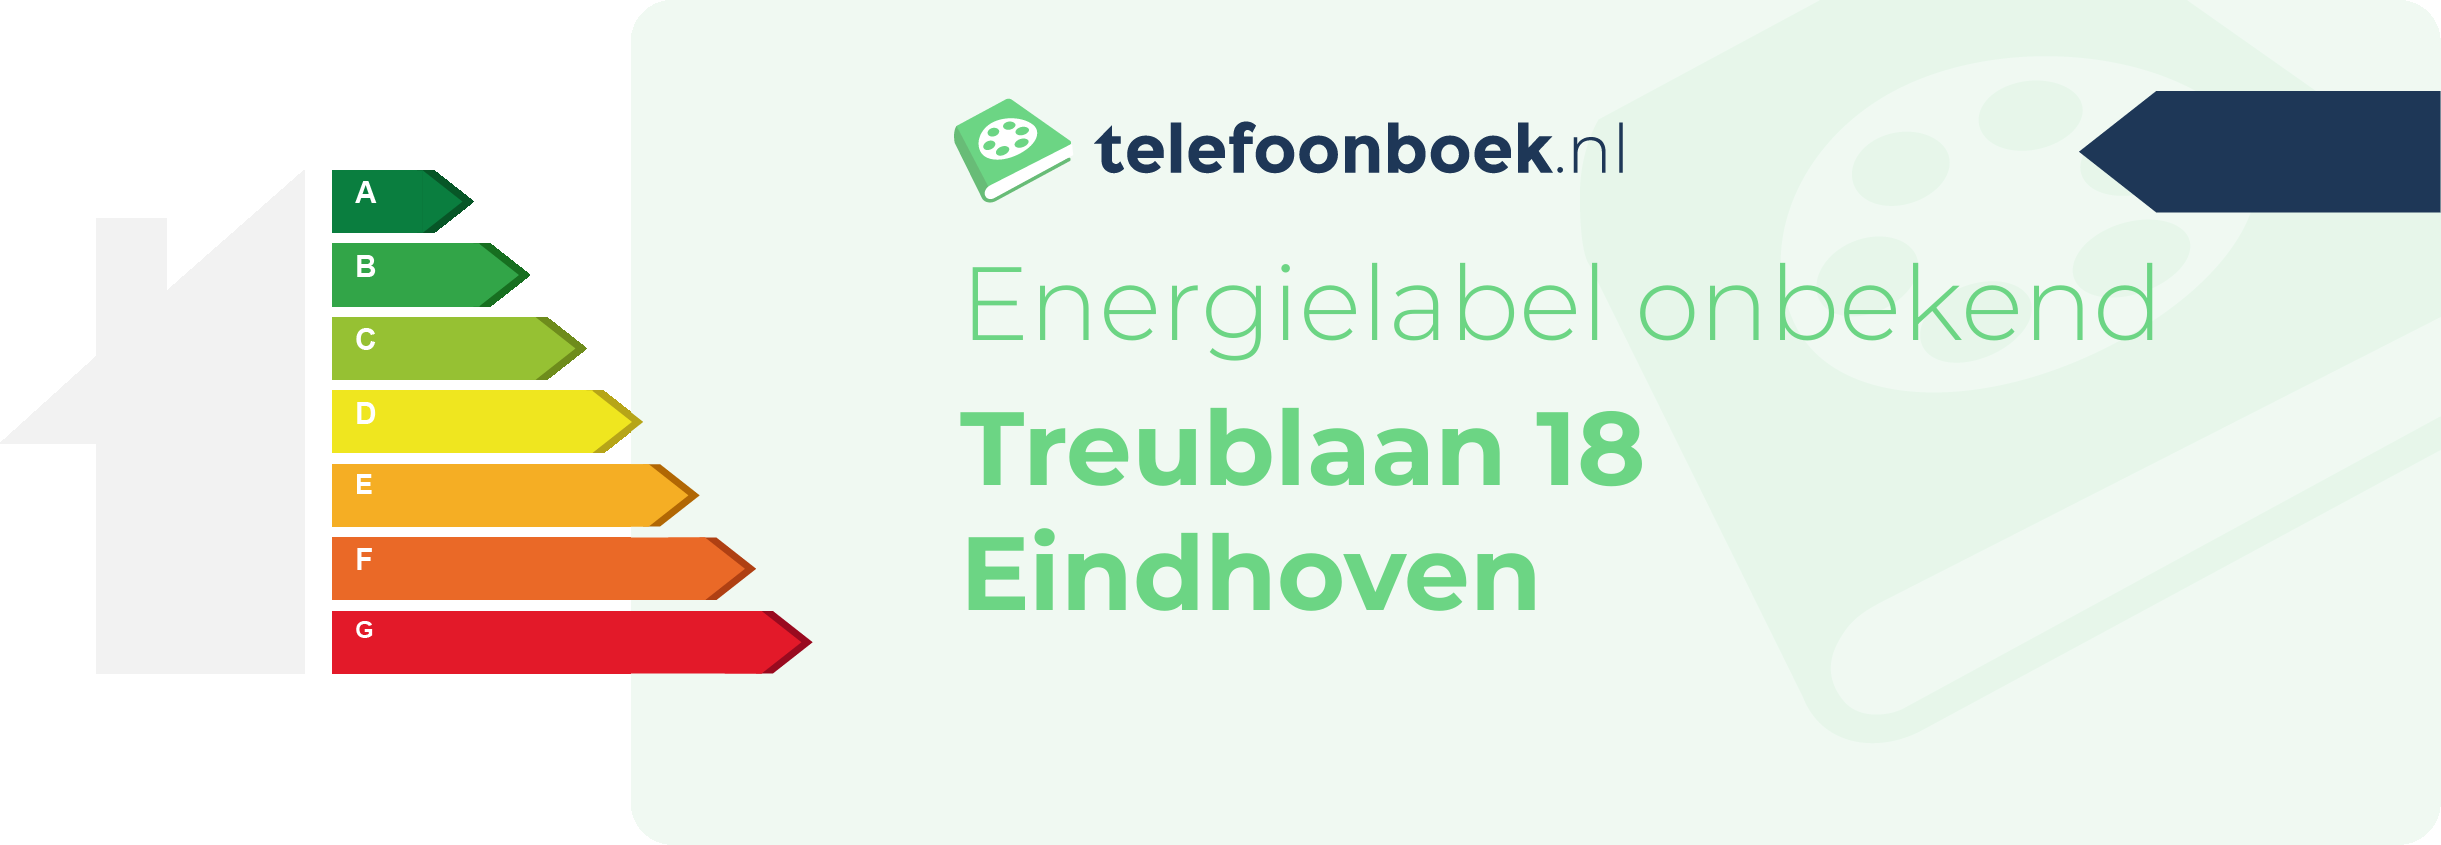 Energielabel Treublaan 18 Eindhoven